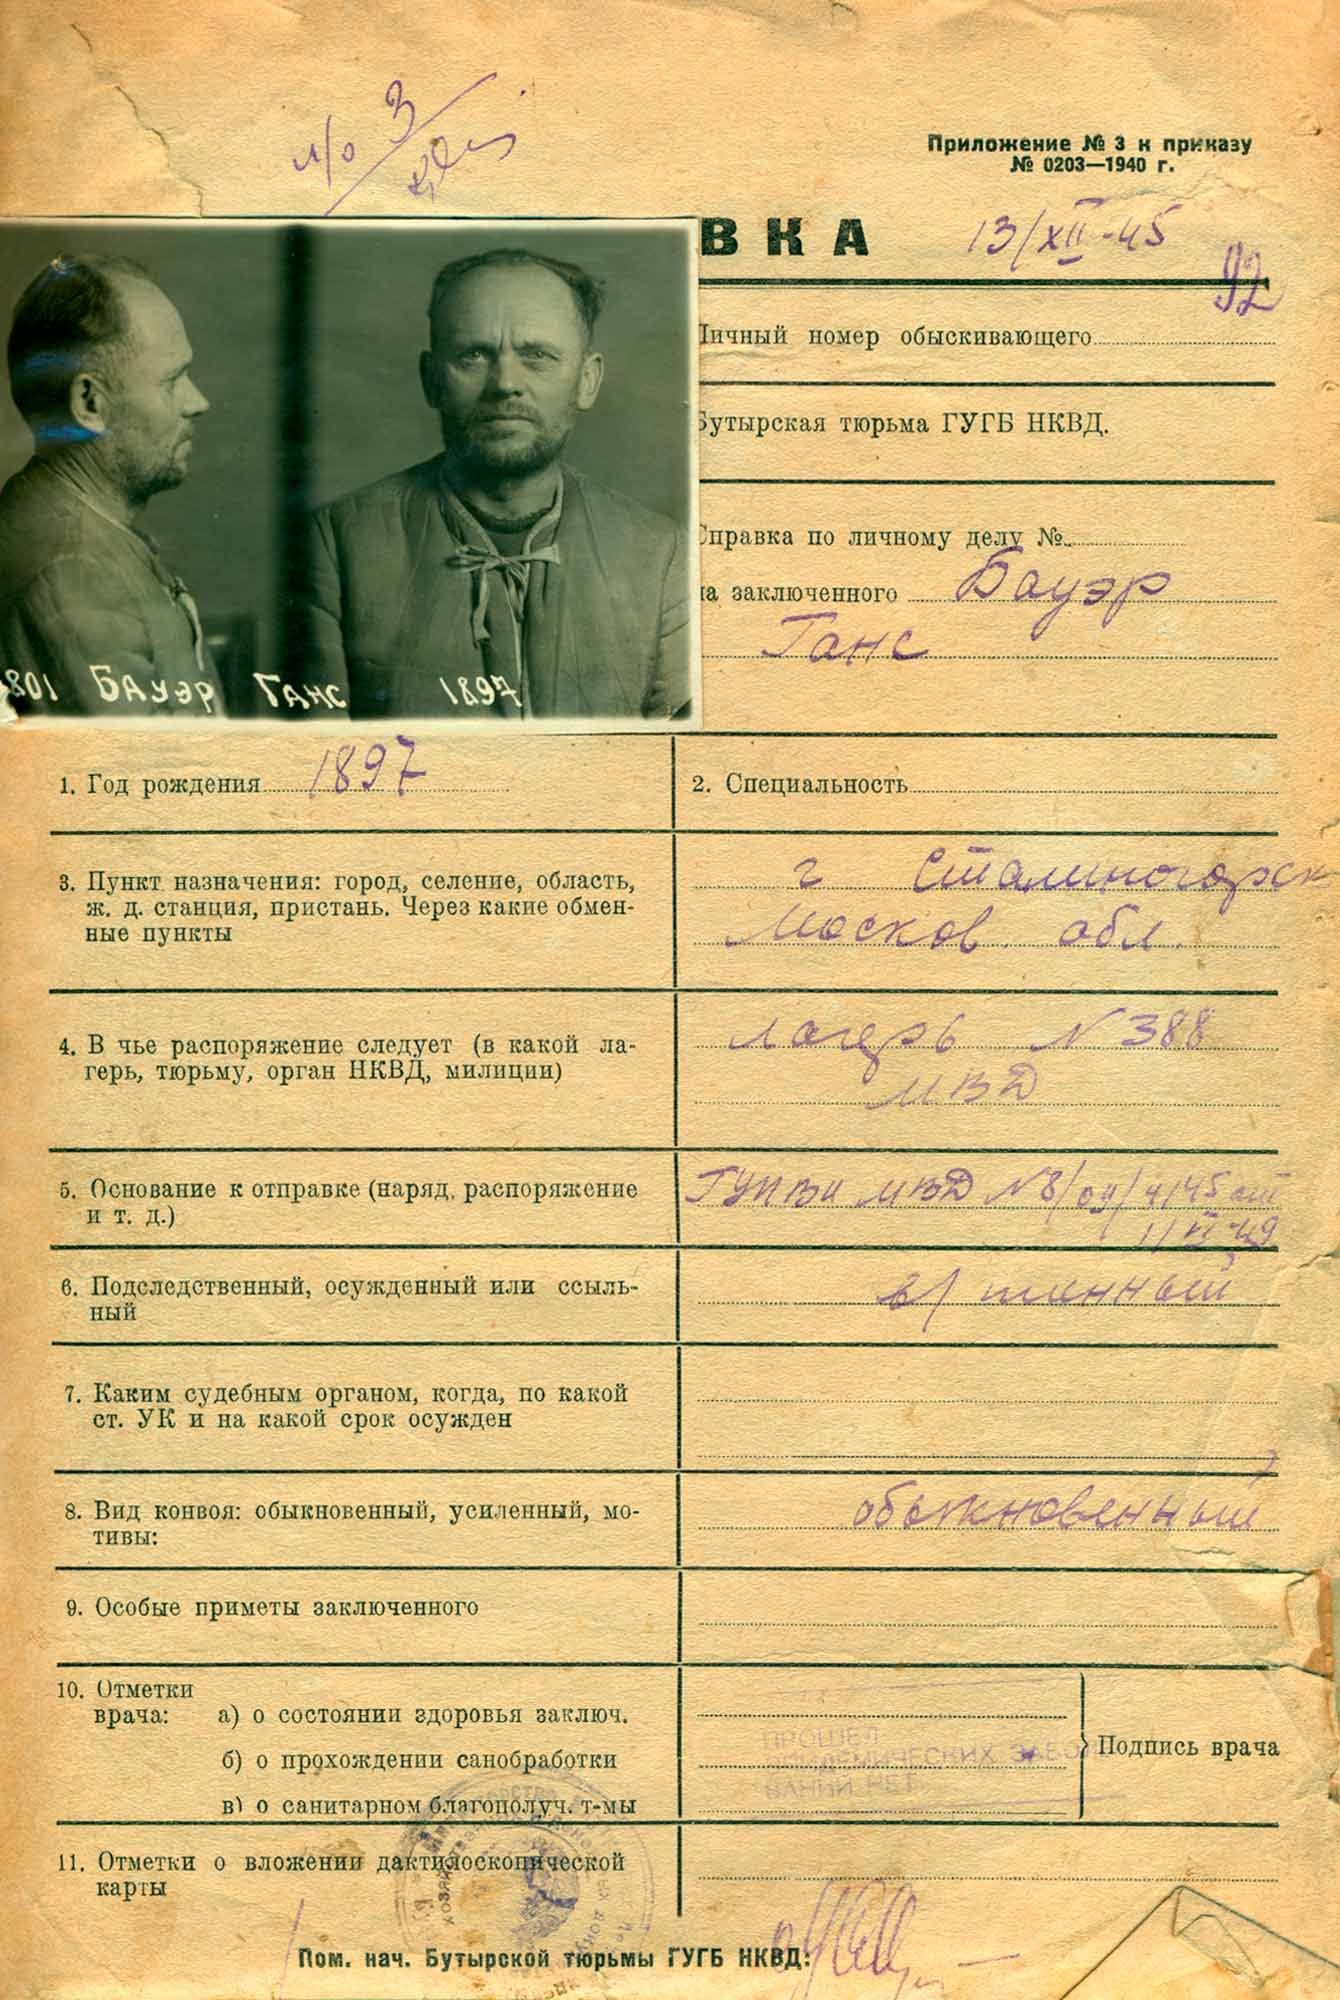 Справка на арестованного Г. Баура. 13 декабря 1945 года.